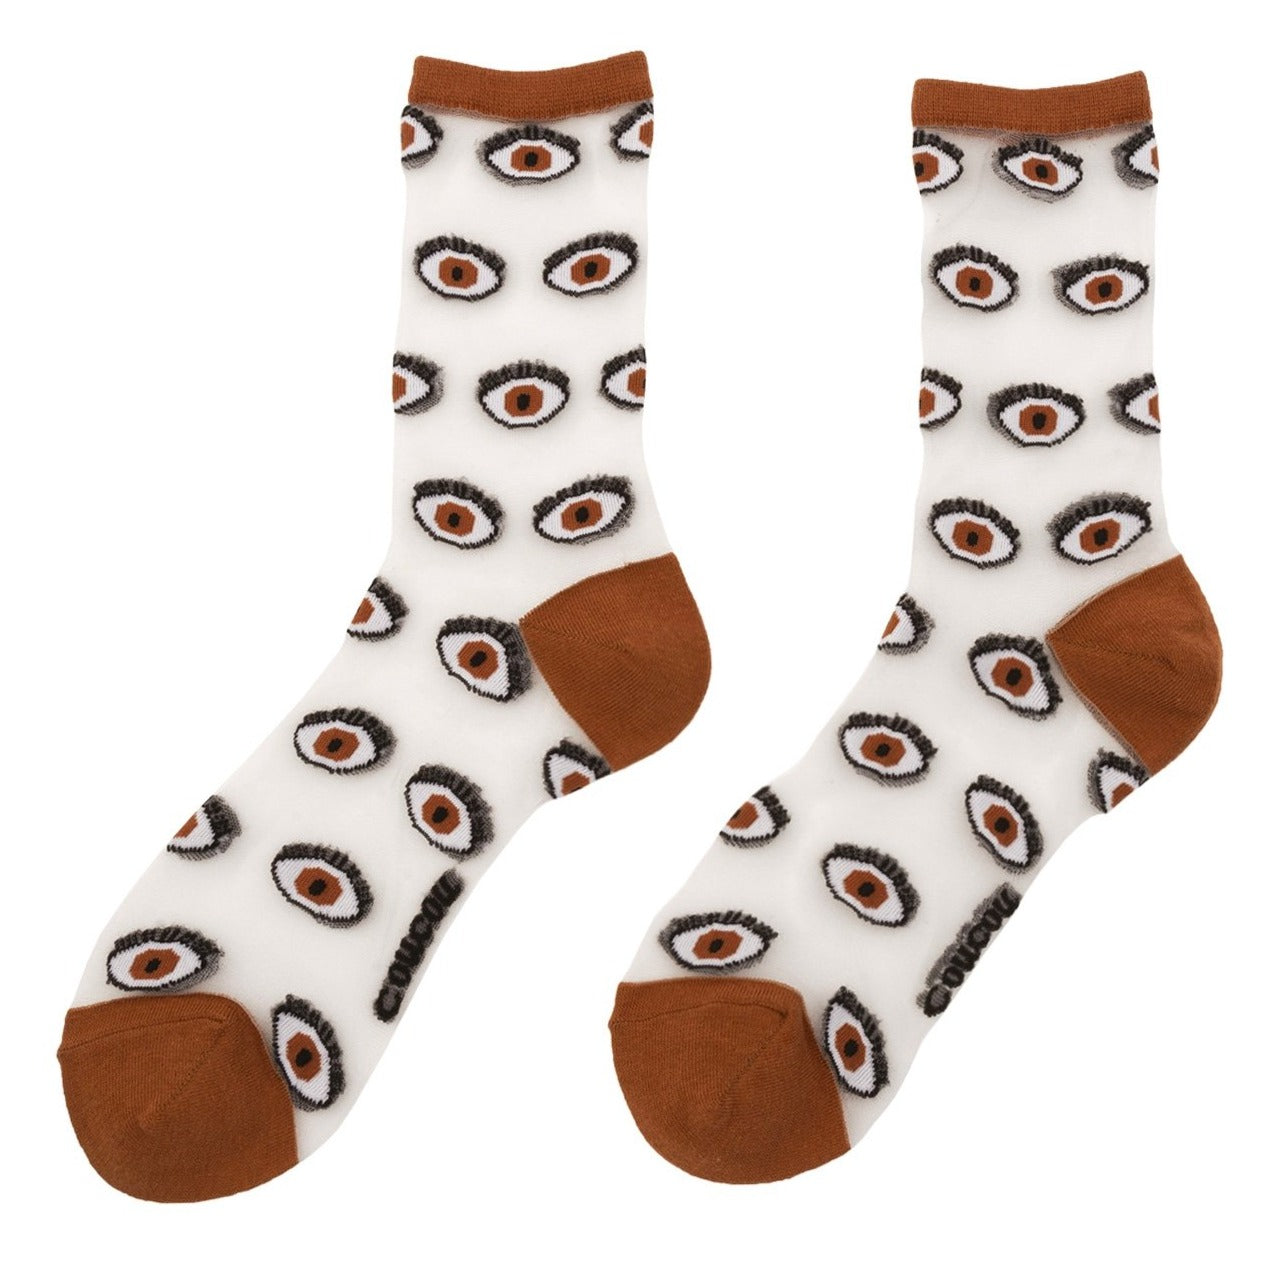 Eye Sheer Socks in Brown